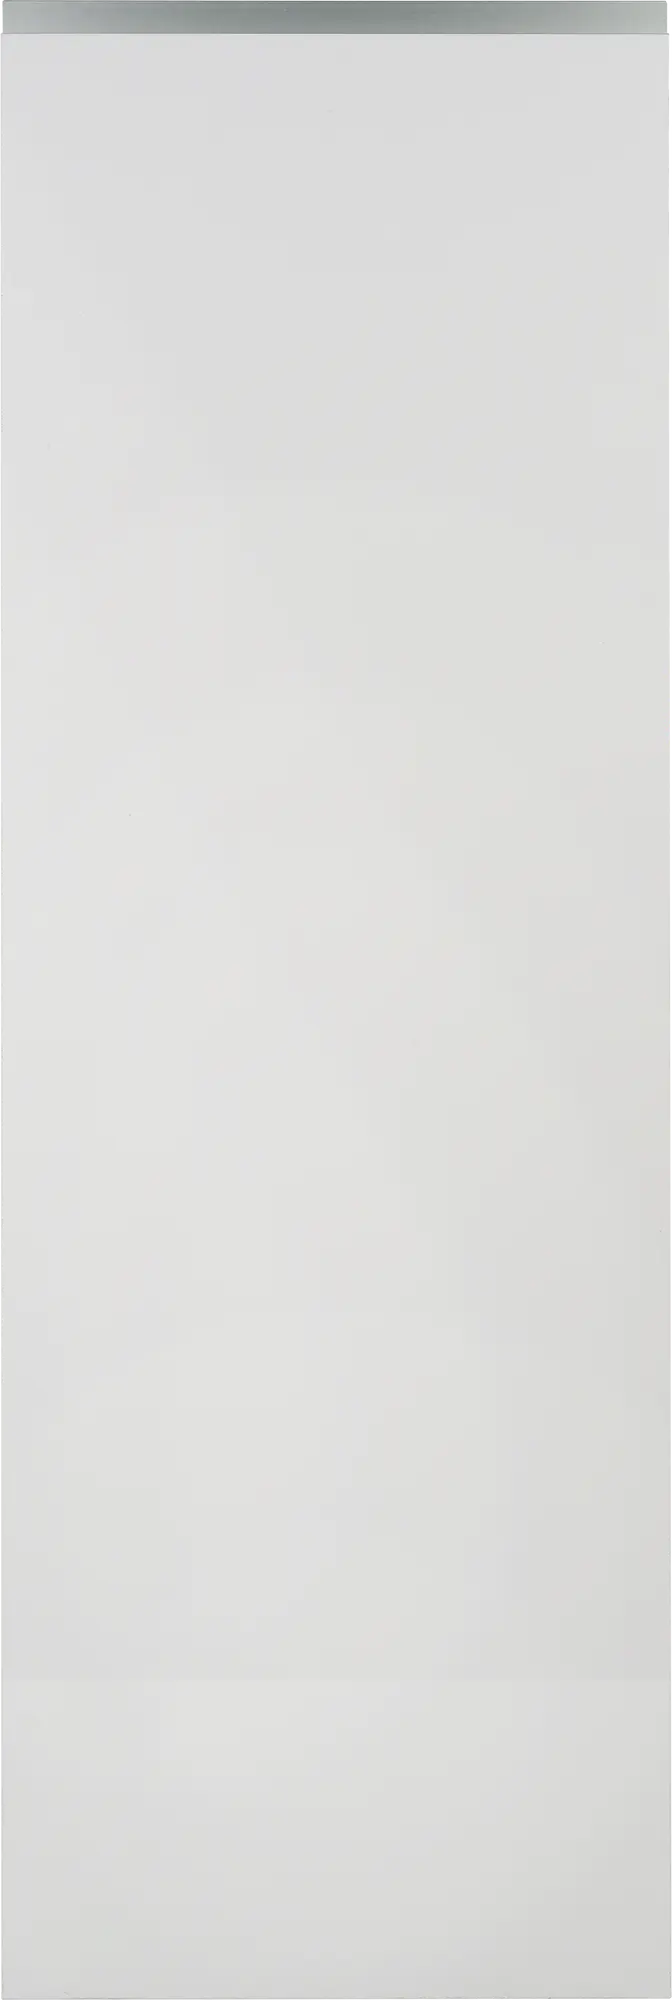 Puerta para mueble cocina mikonos blanco brillo 44,7x137,3cm